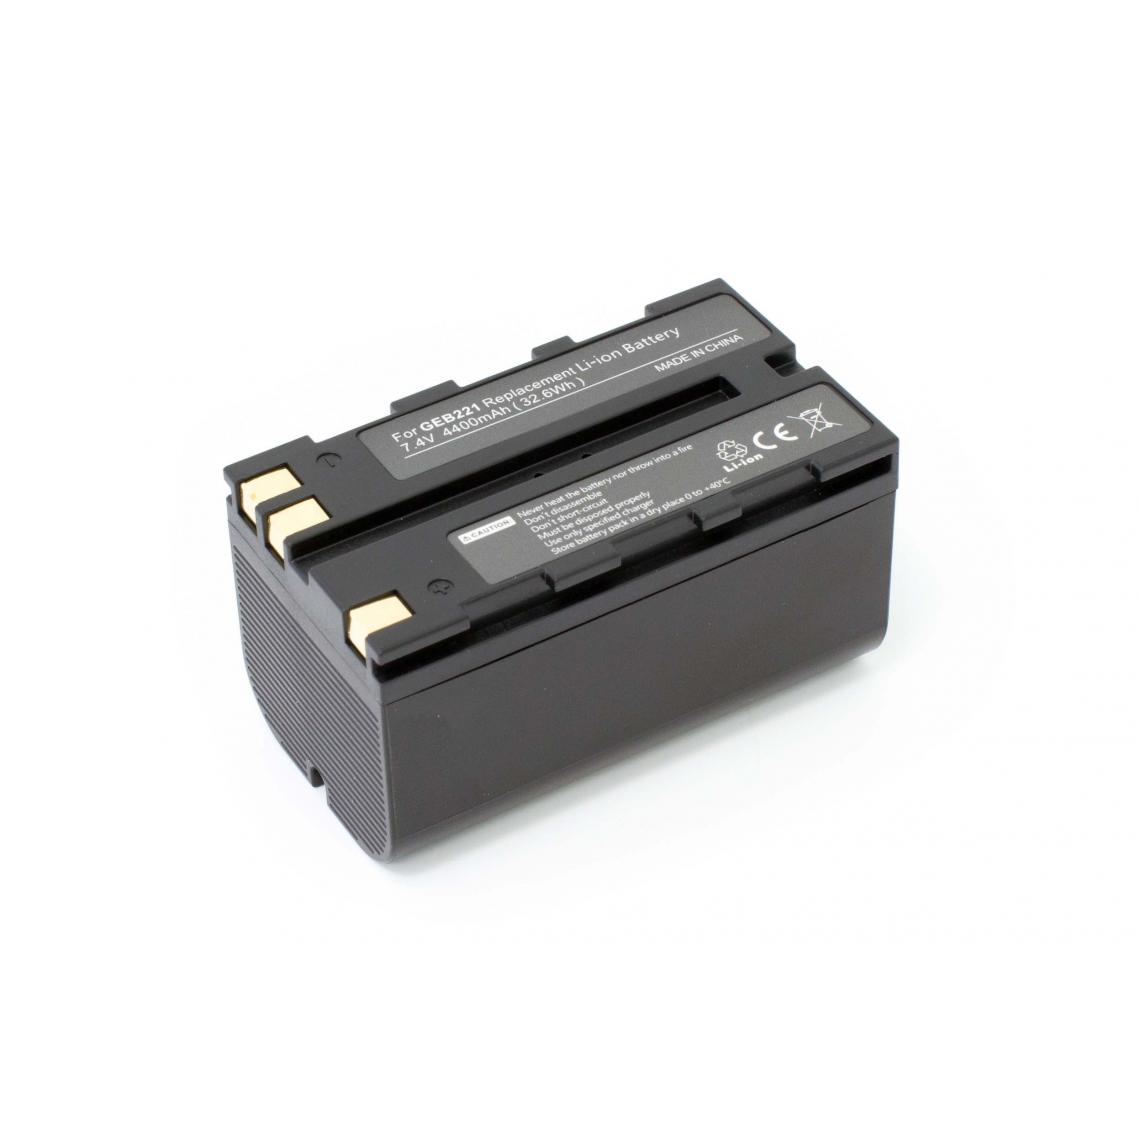 Vhbw - vhbw batterie compatible avec Leica Piper 100, 200, 100 Laser, 200 Laser appareil photo DSLR (4400mAh, 7,4V, Li-Ion) - Piles rechargeables